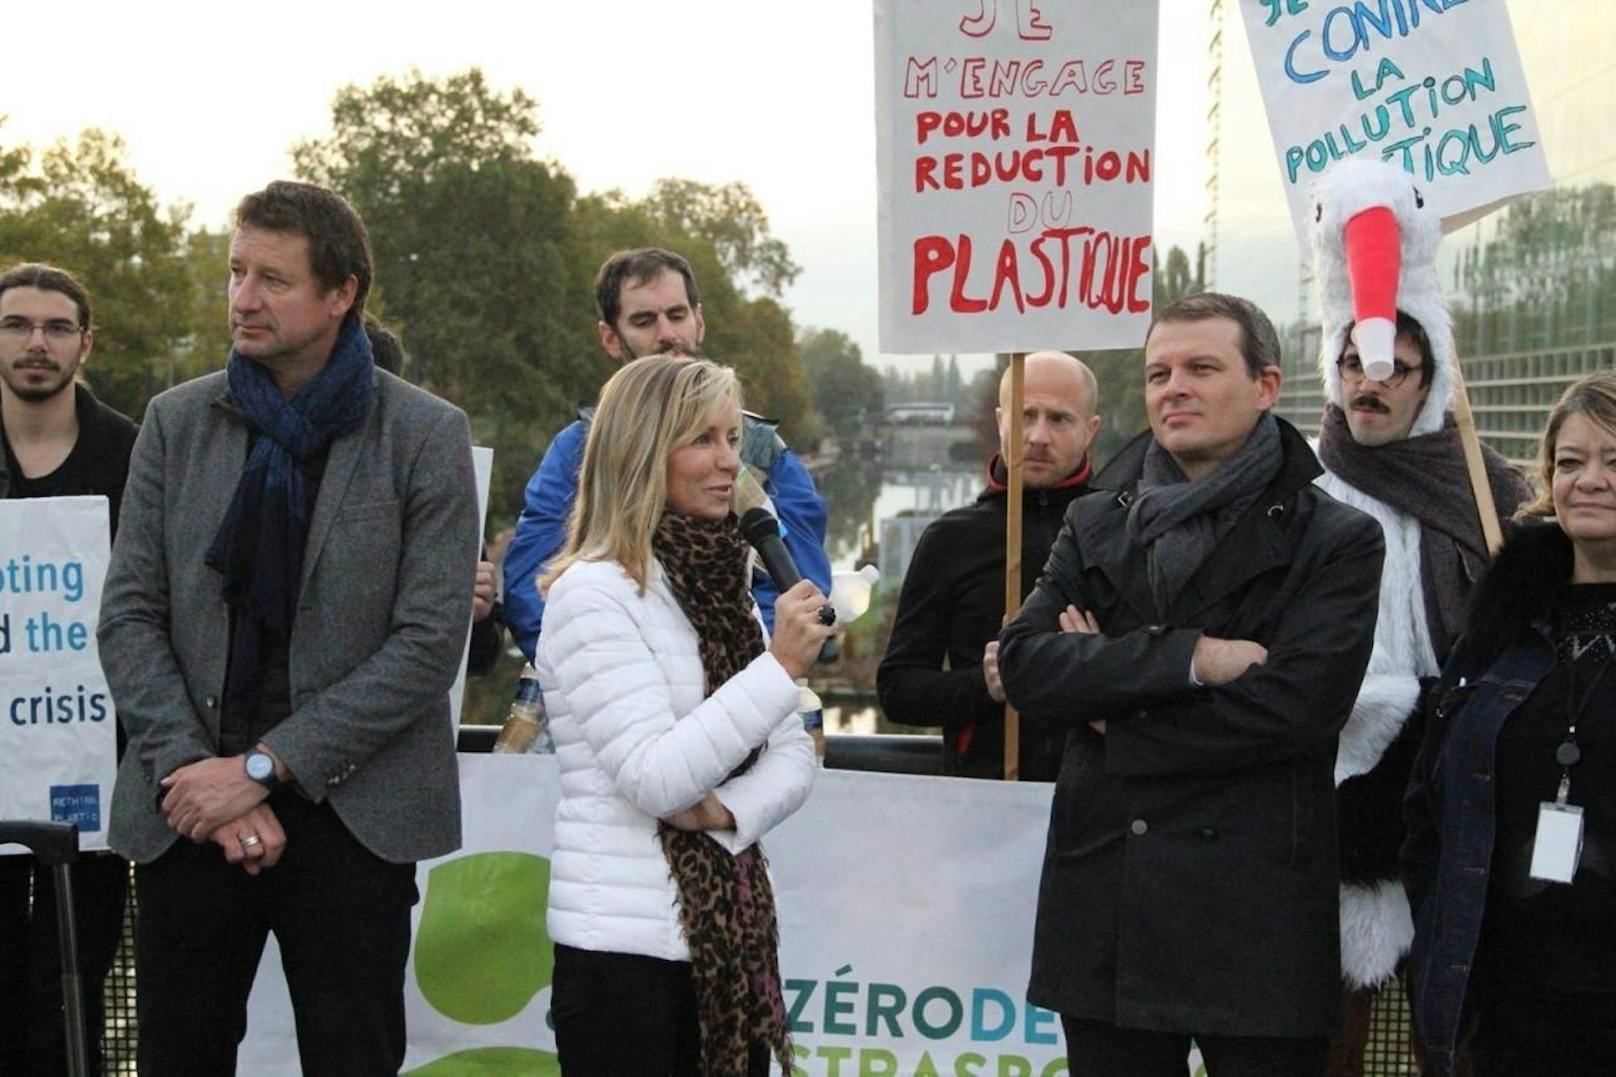 Frédérique Ries, Mitglied im Ausschuss für Umweltfragen, will bis 2021 unter anderem Wattestäbchen, Teller, Besteck, Strohhalme und Luftballons aus Polystyrene in der EU verbieten.